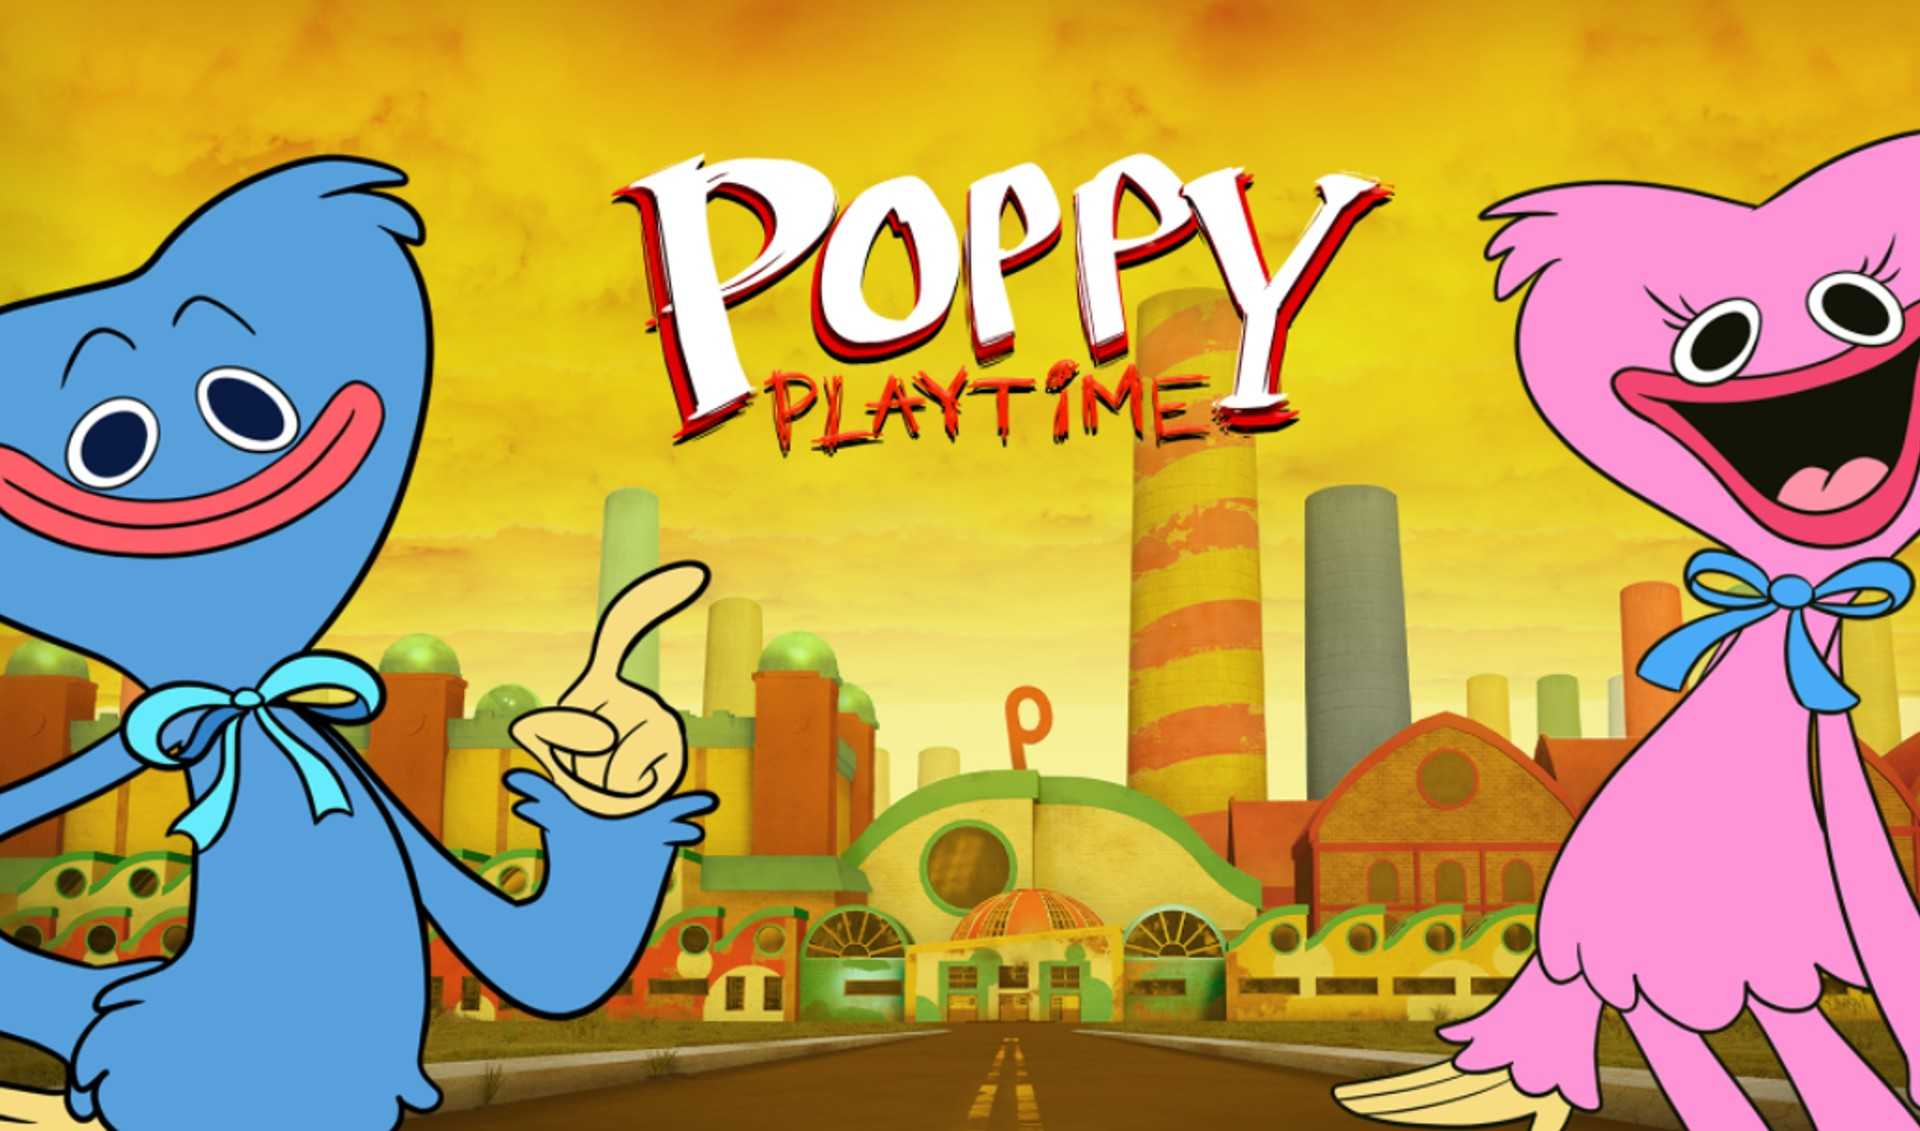 Poppy playtime 3 poster. Поппи Плэйтайм. Рисунки игры Poppy Playtime. Игра Poppy Playtime завод.